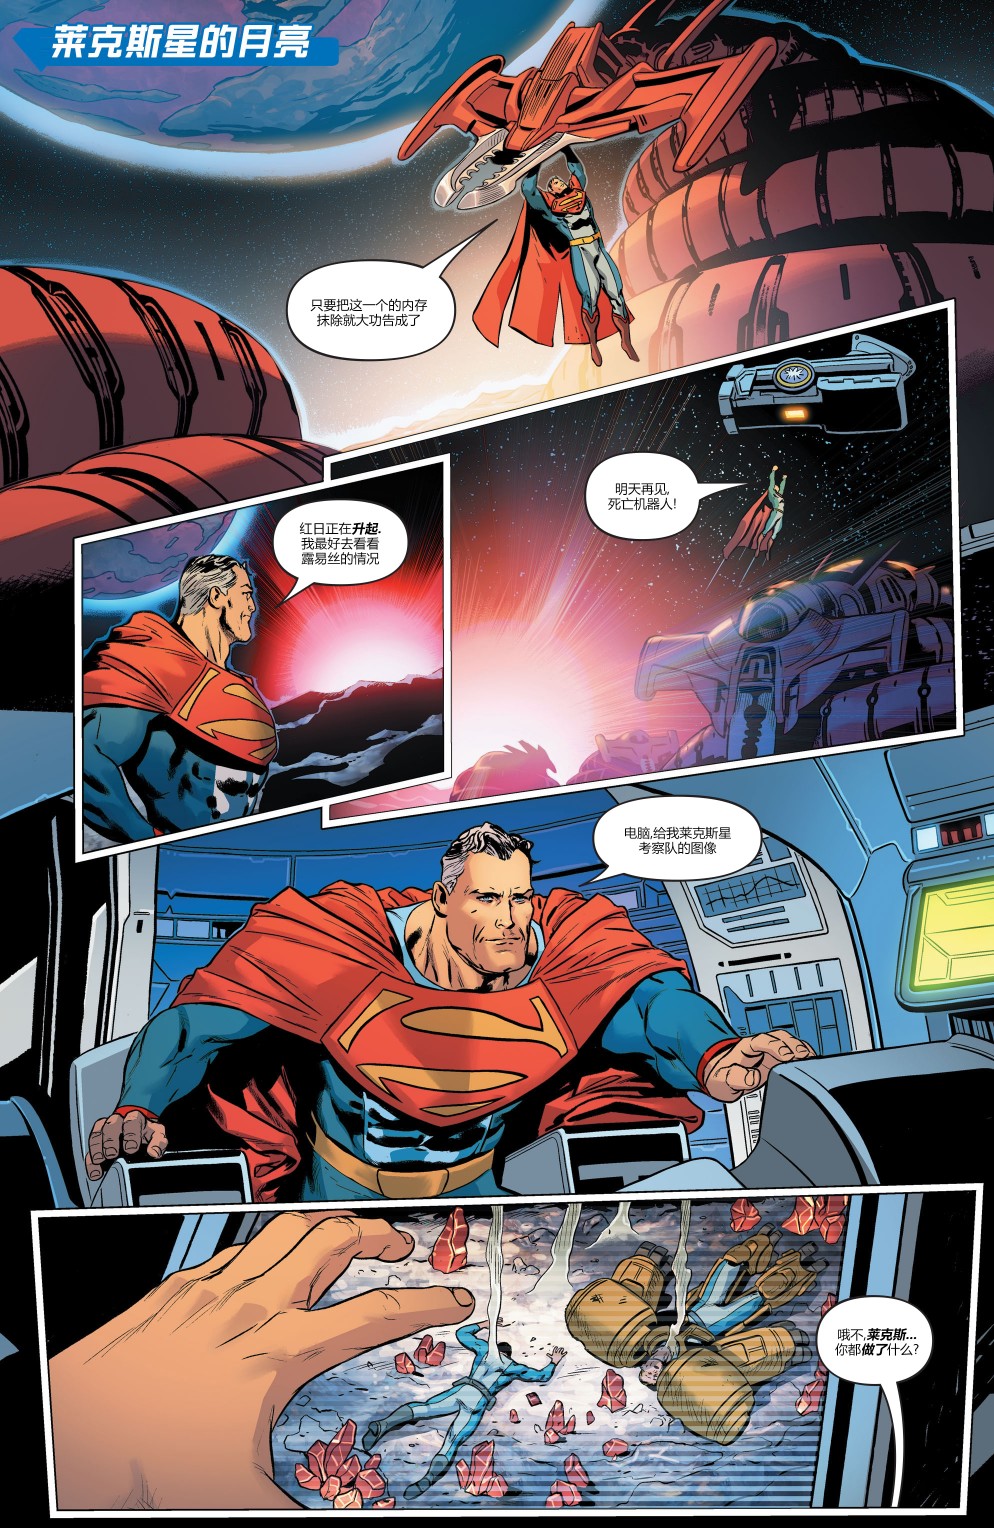 超人大战霸王莱克斯#212